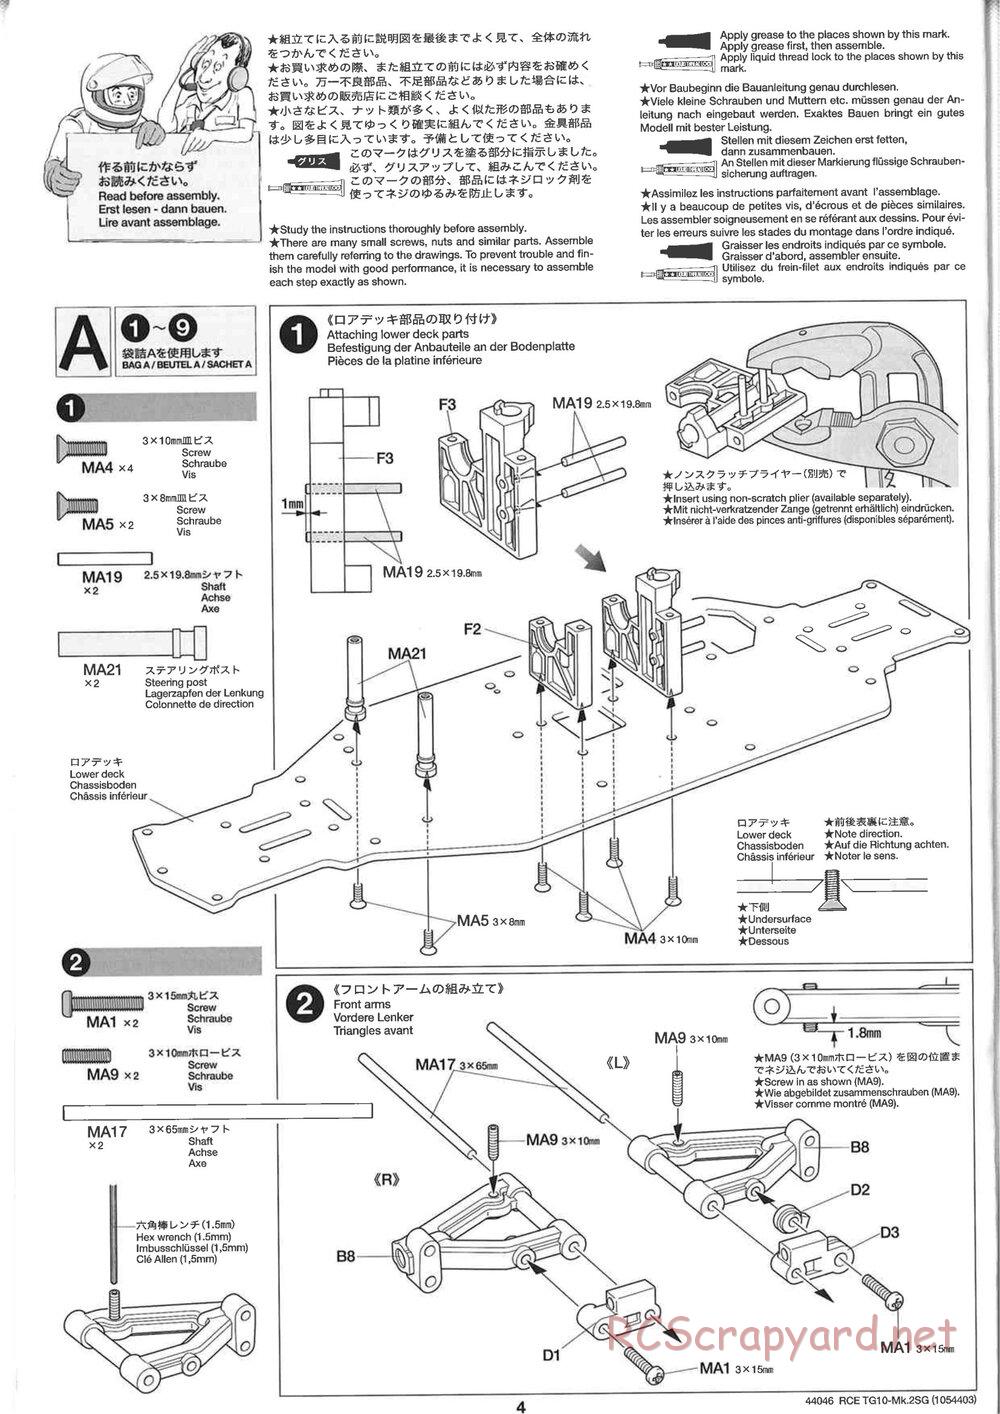 Tamiya - TG10 Mk.2SG Chassis - Manual - Page 4